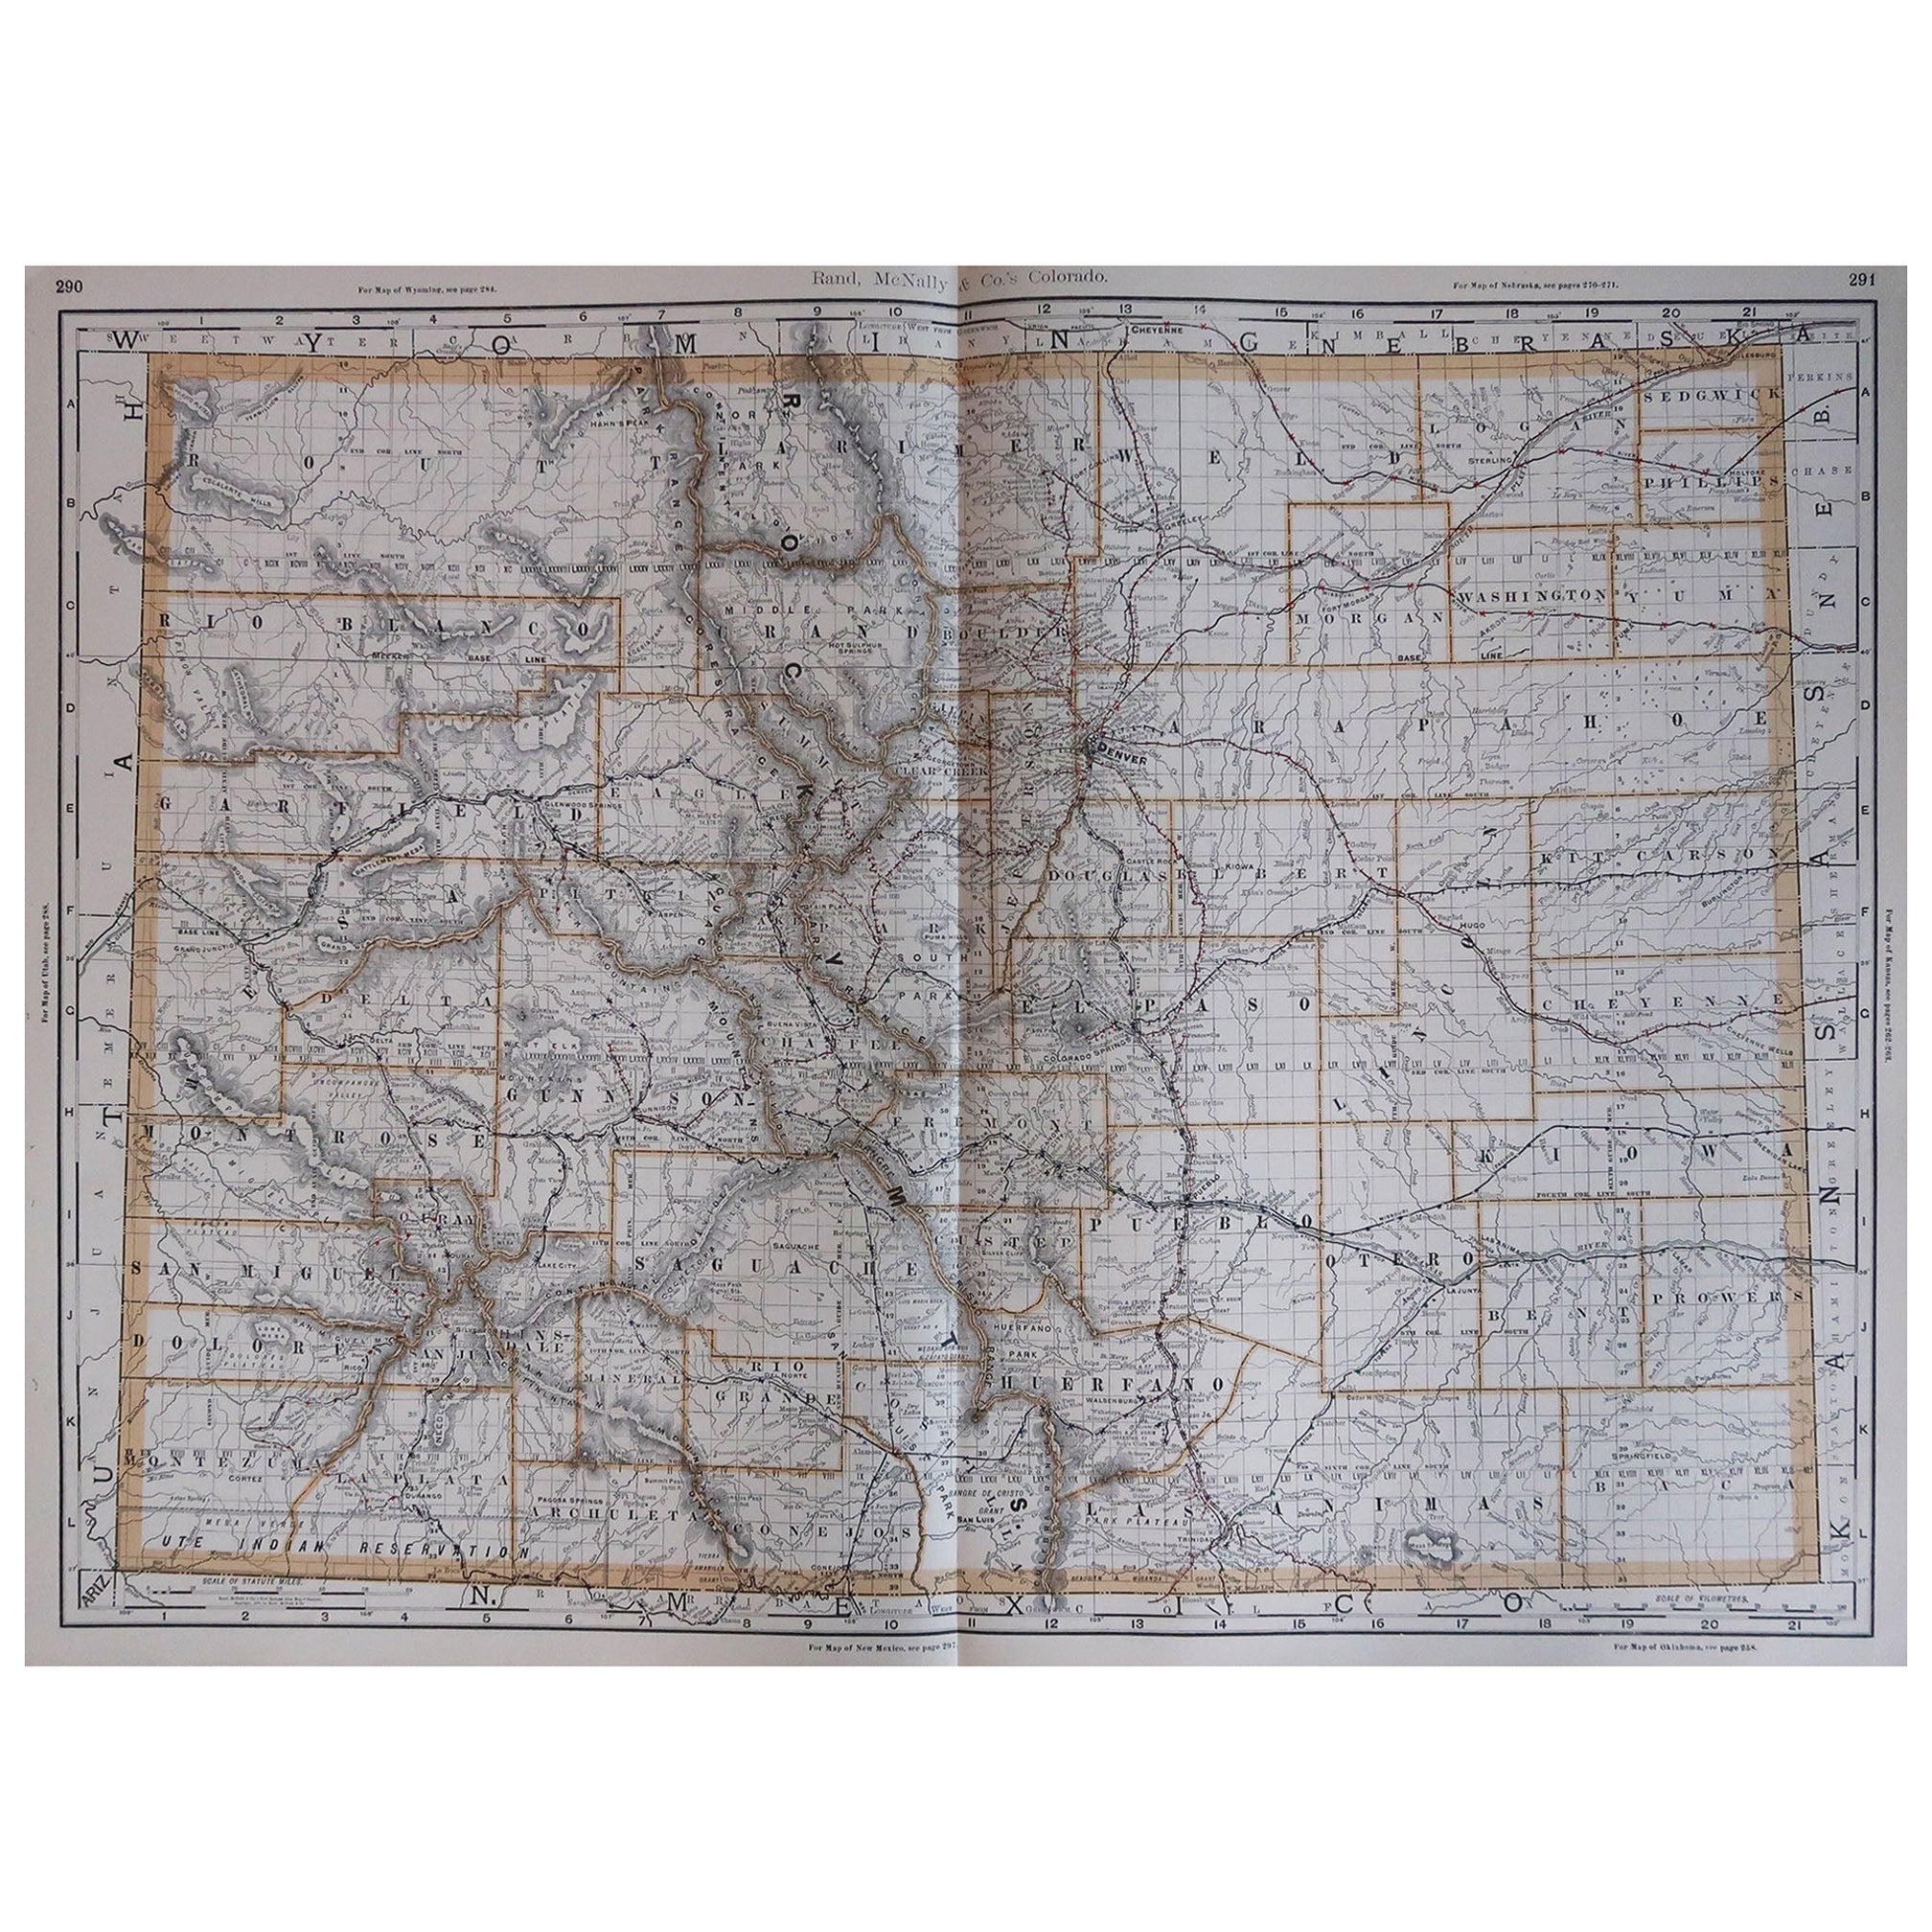 Large Original Antique Map of Colorado, USA, 1894